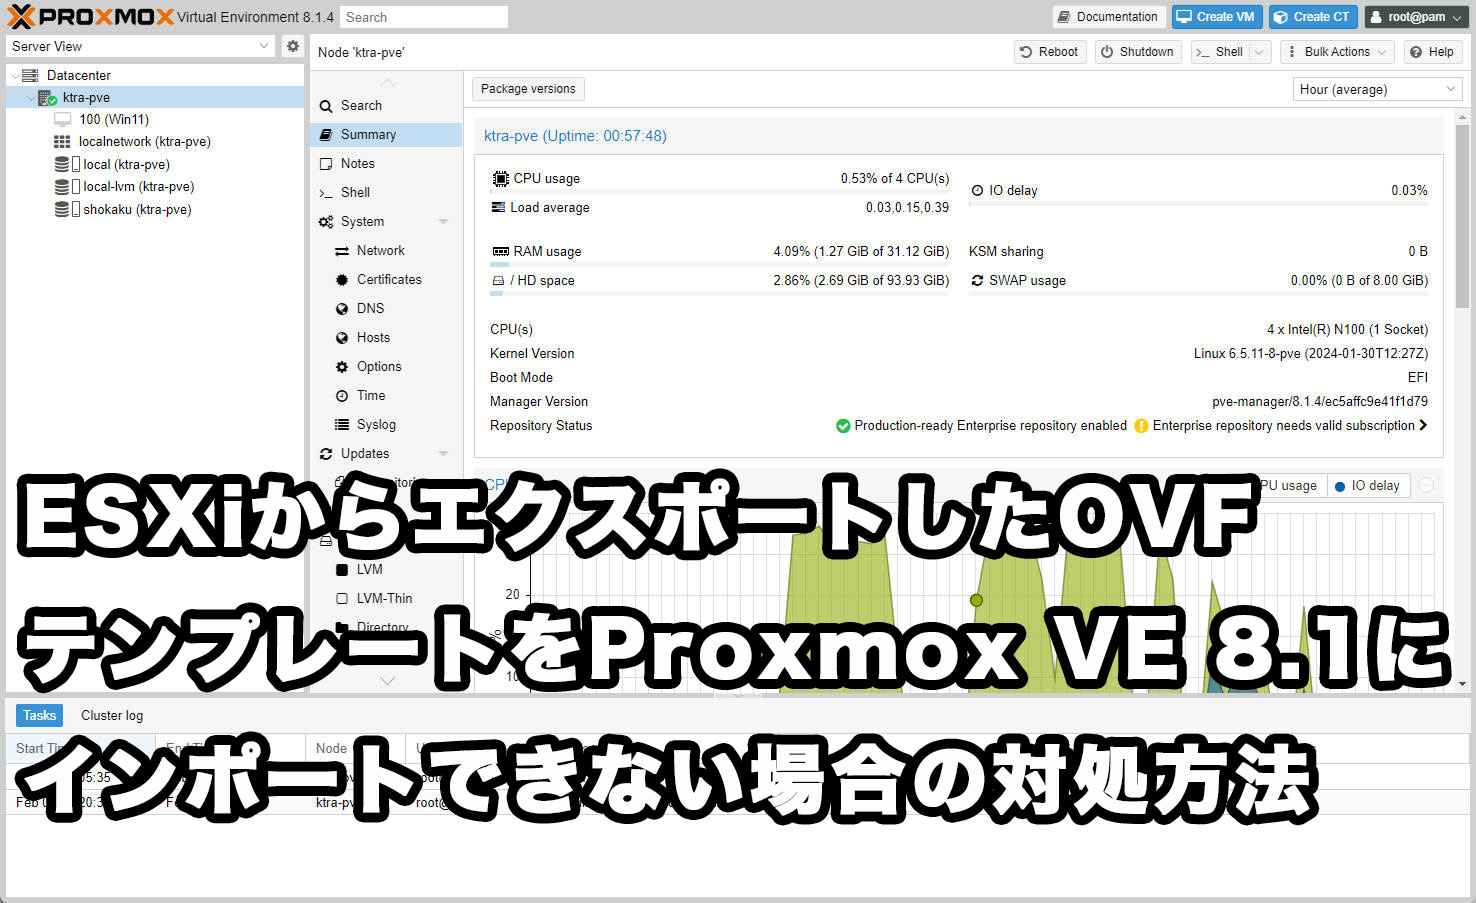 ESXiからエクスポートしたOVFテンプレートをProxmox VE 8.1にインポート出来ない場合の対処方法